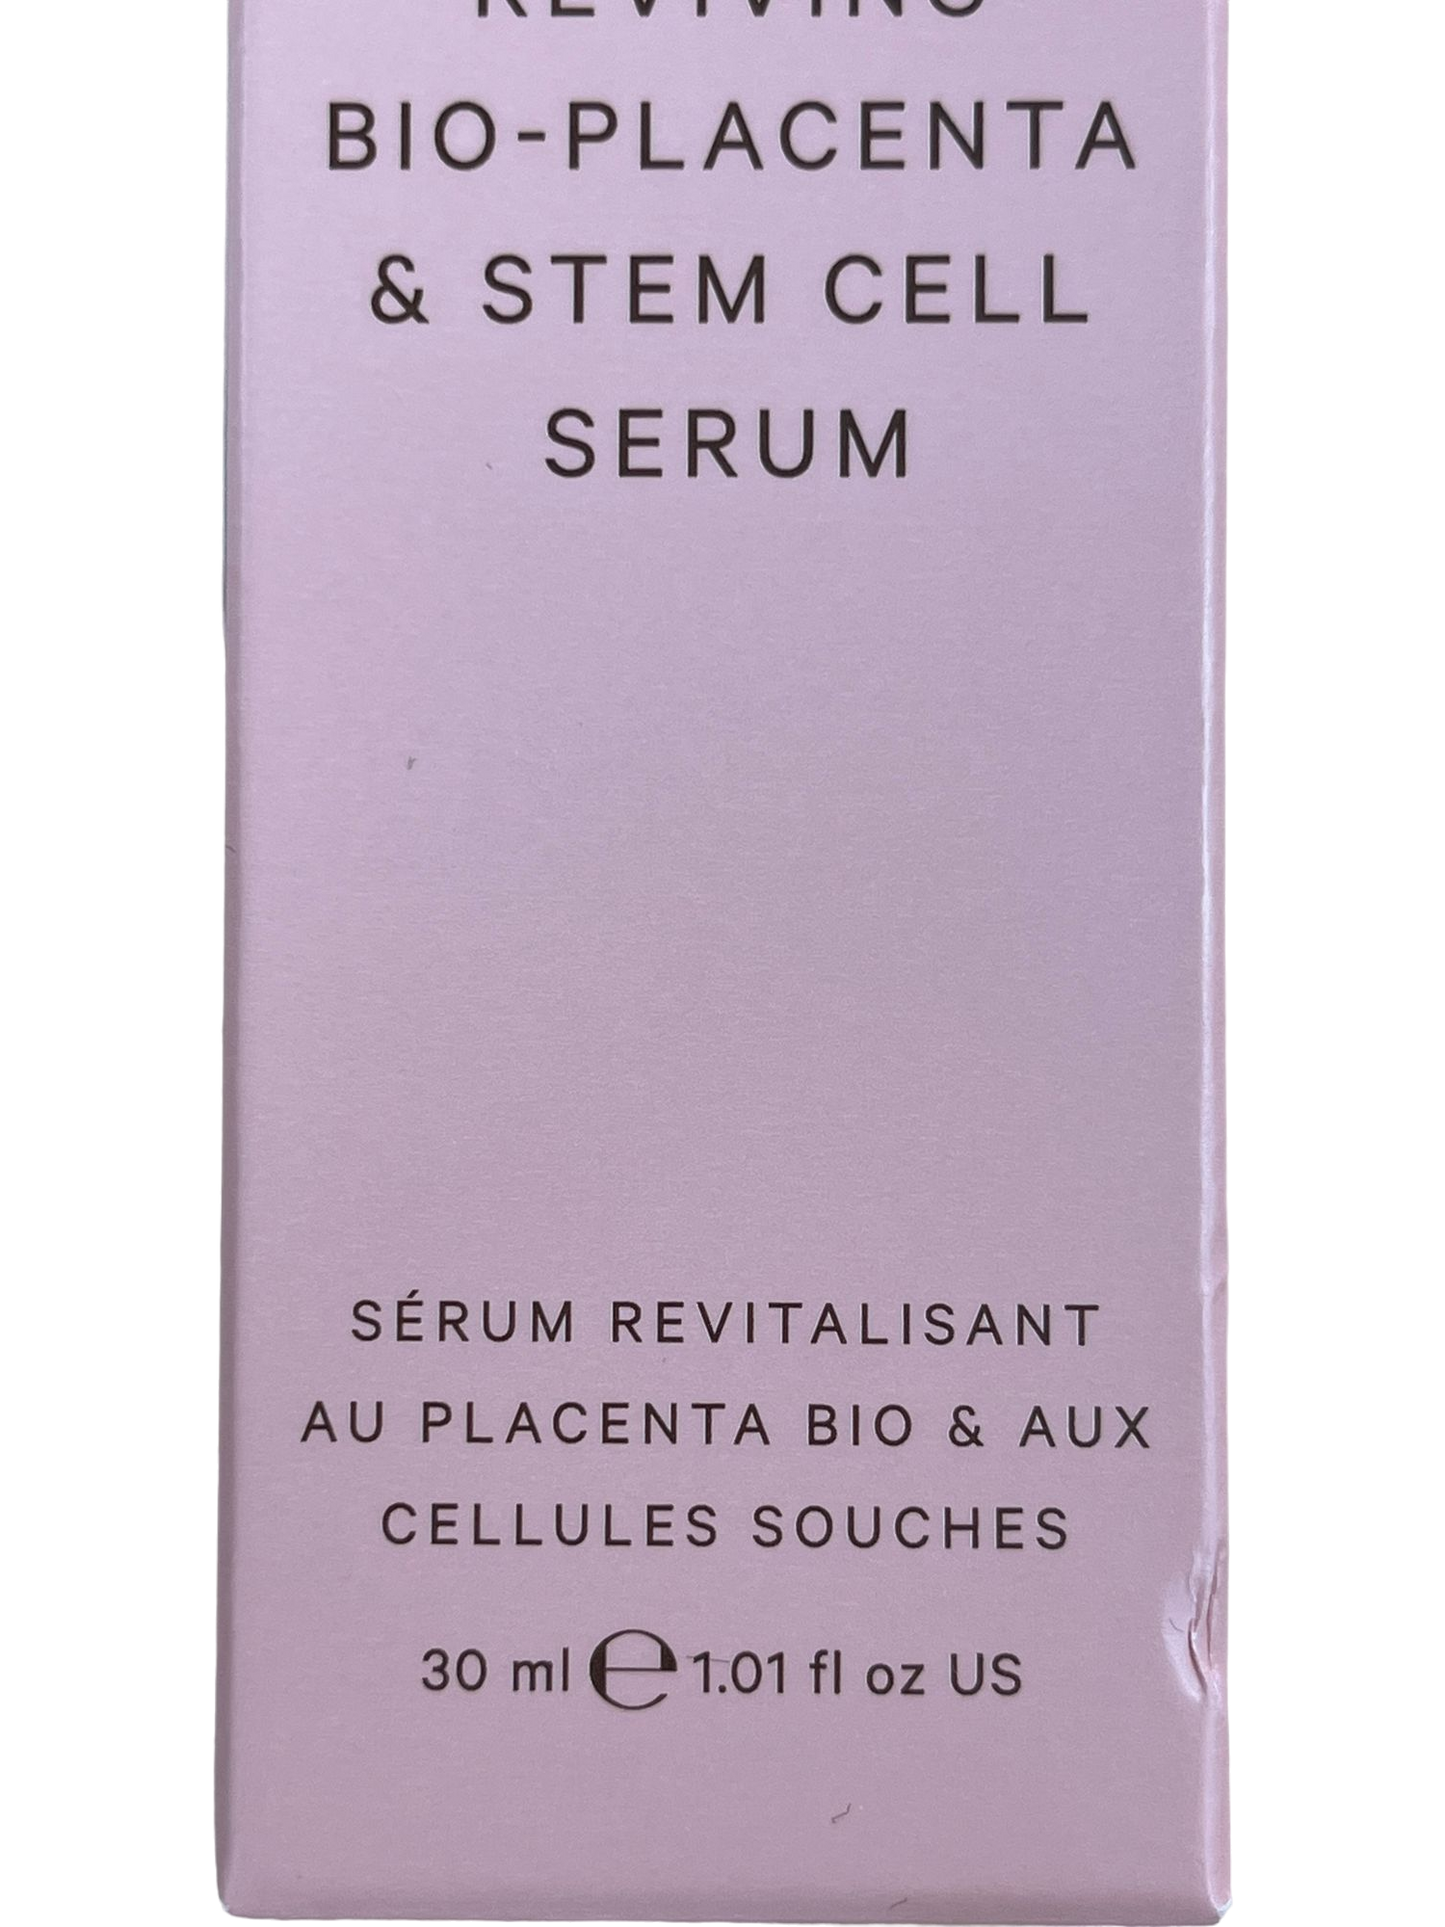 MZ Skin Pink Reviving Bio-Placenta & Stem Cell Serum 30ml